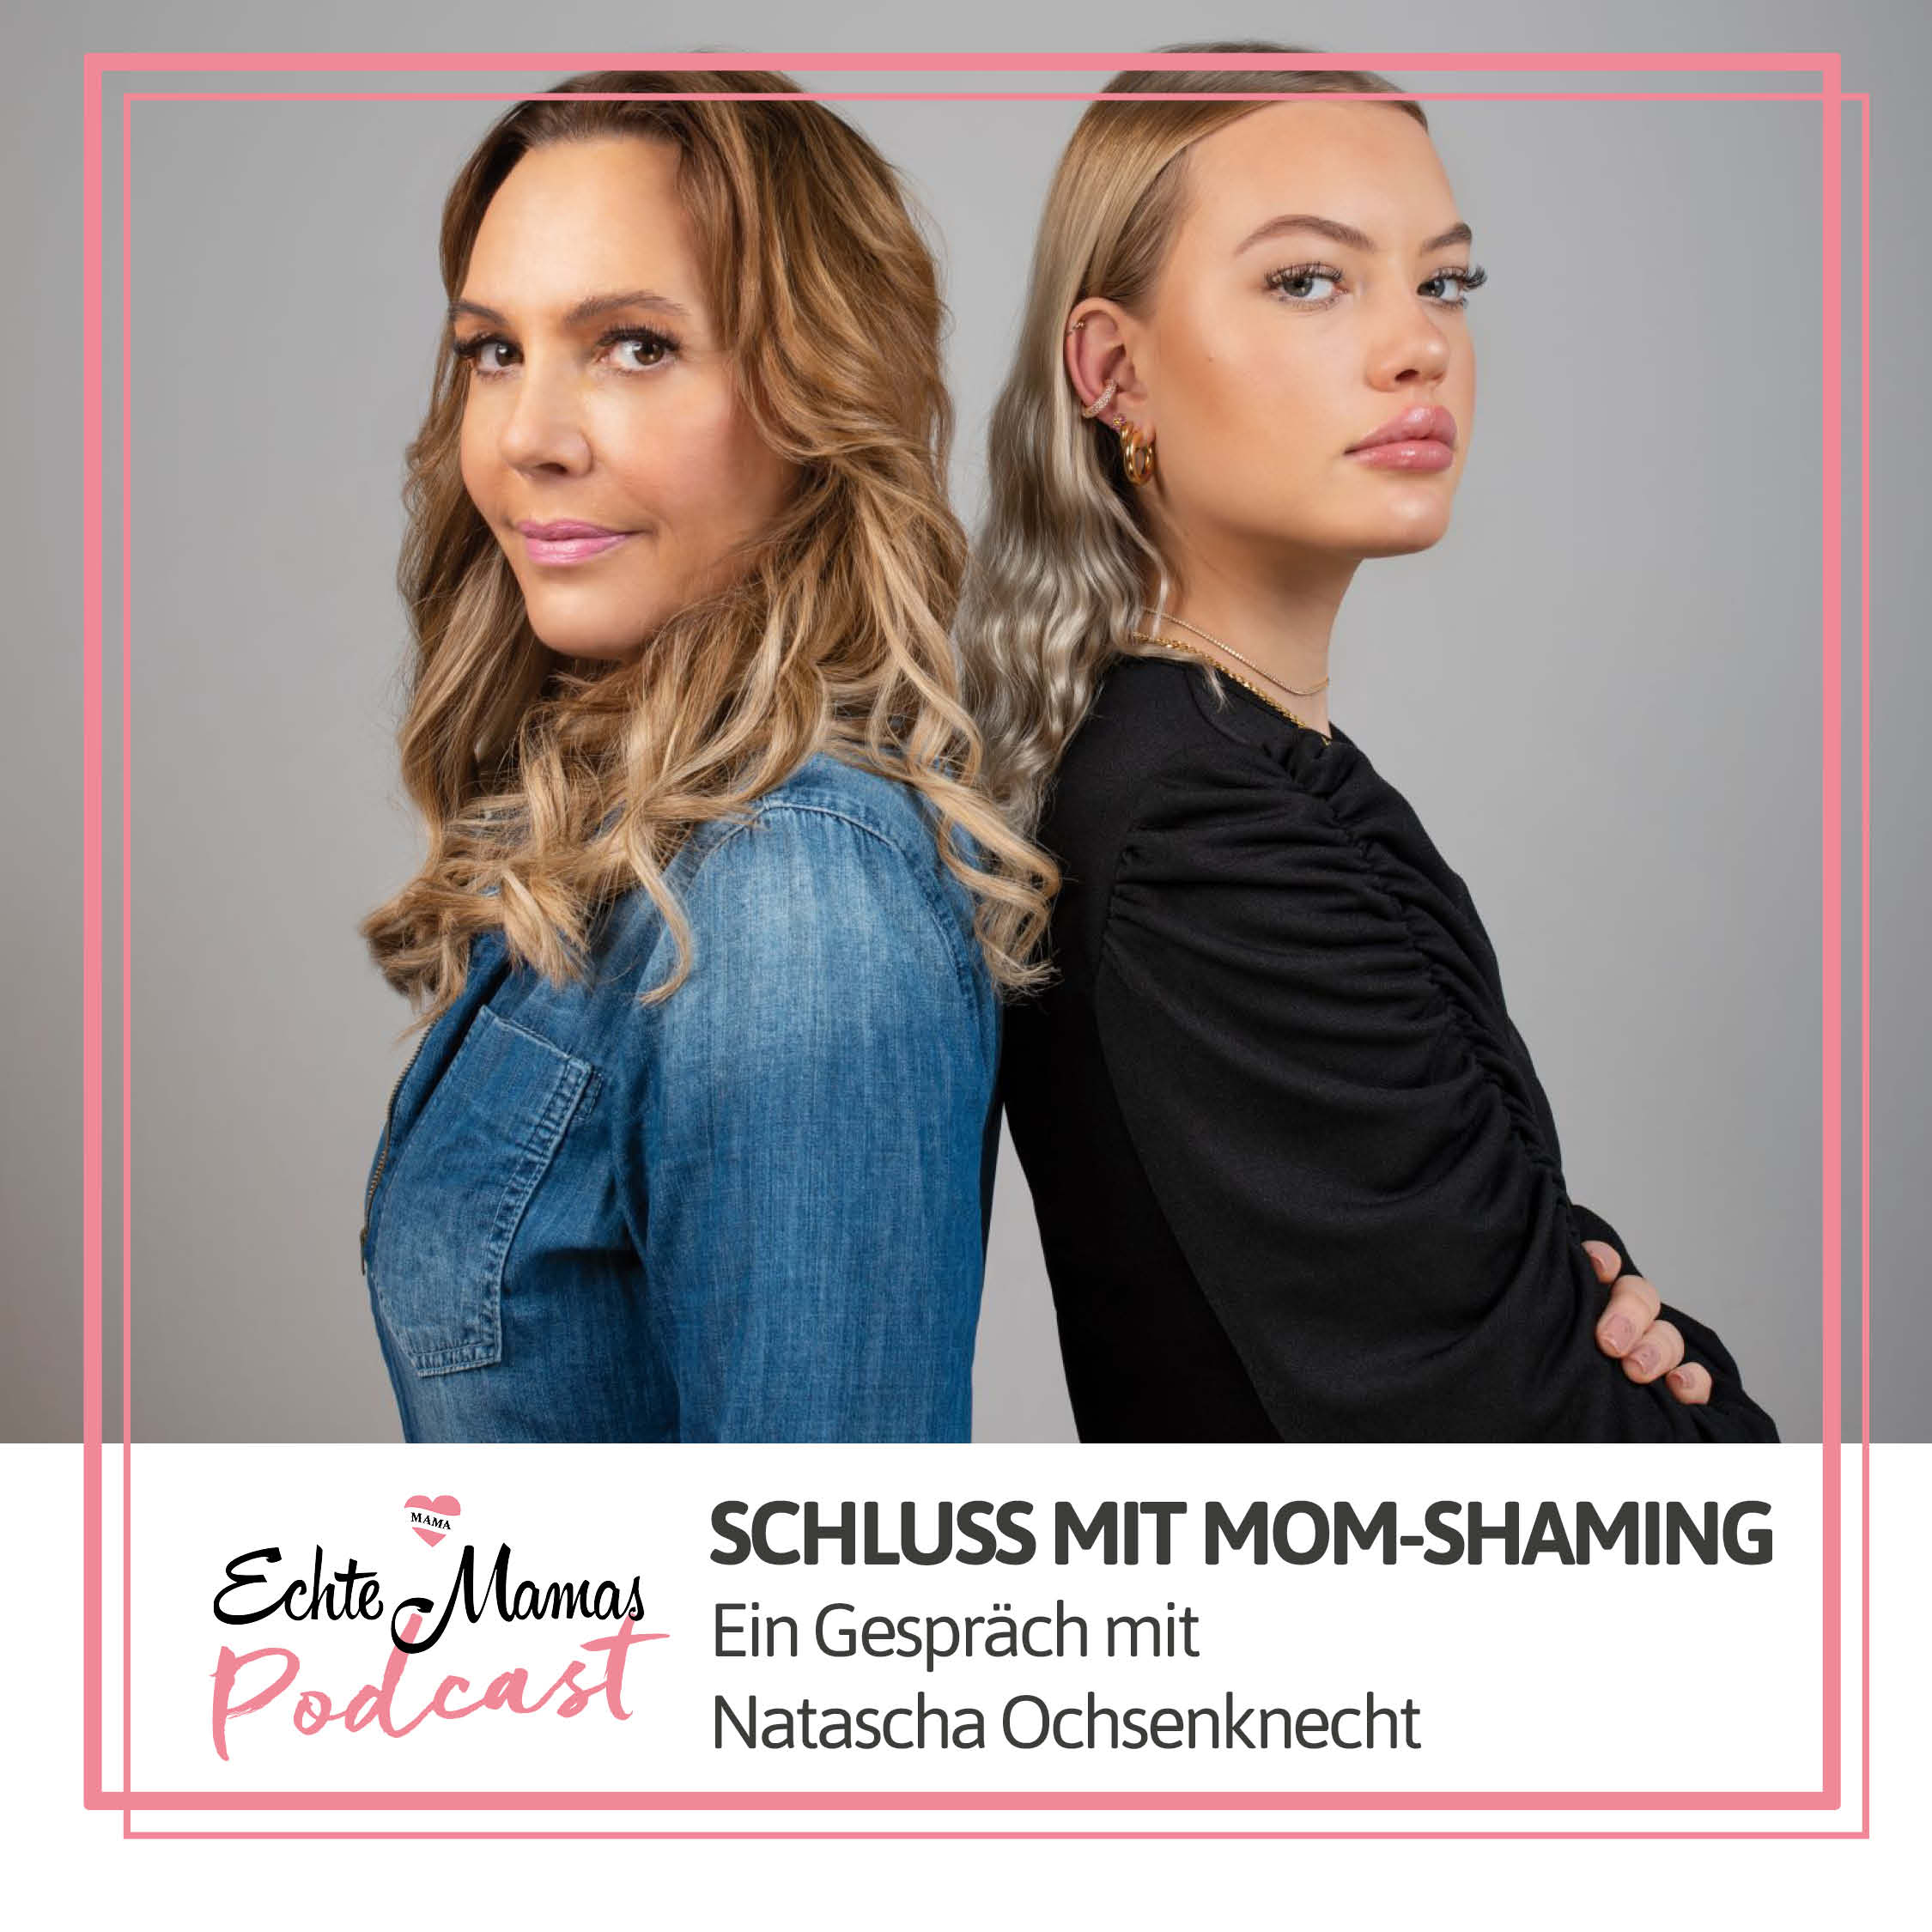 Schluss mit Mom-Shaming! Ein Gespräch mit Natascha Ochsenknecht